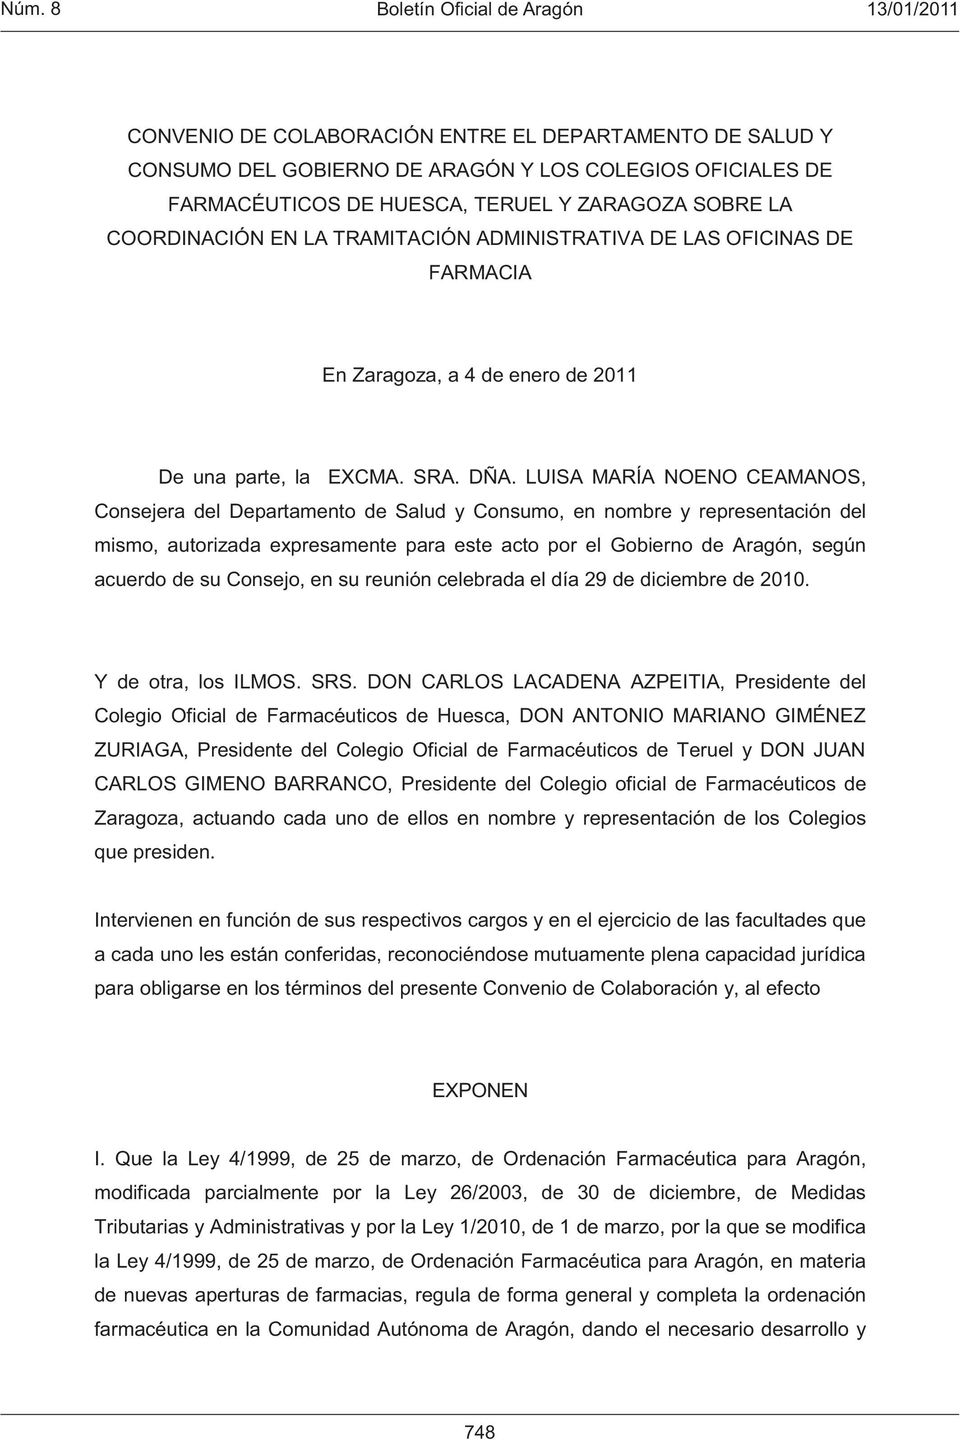 LUISA MARÍA NOENO CEAMANOS, Consejera del Departamento de Salud y Consumo, en nombre y representación del mismo, autorizada expresamente para este acto por el Gobierno de Aragón, según acuerdo de su